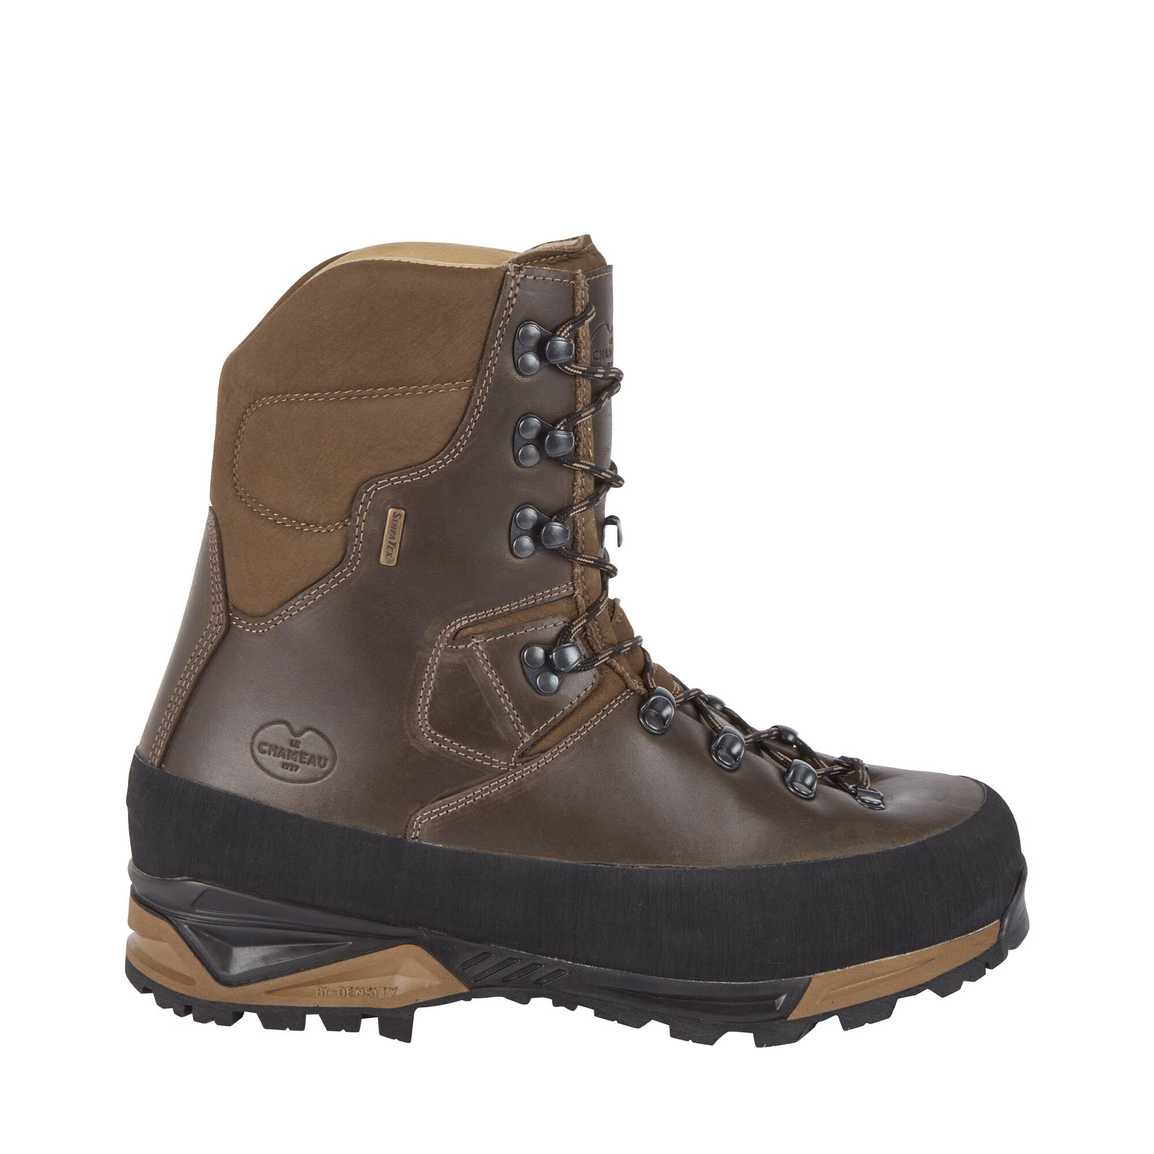 40% OFF LE CHAMEAU Mouflon 2.0 Extreme 10" Leather Boots - Mens - Dark Brown - Size: UK 8.5, 10 & 12.5